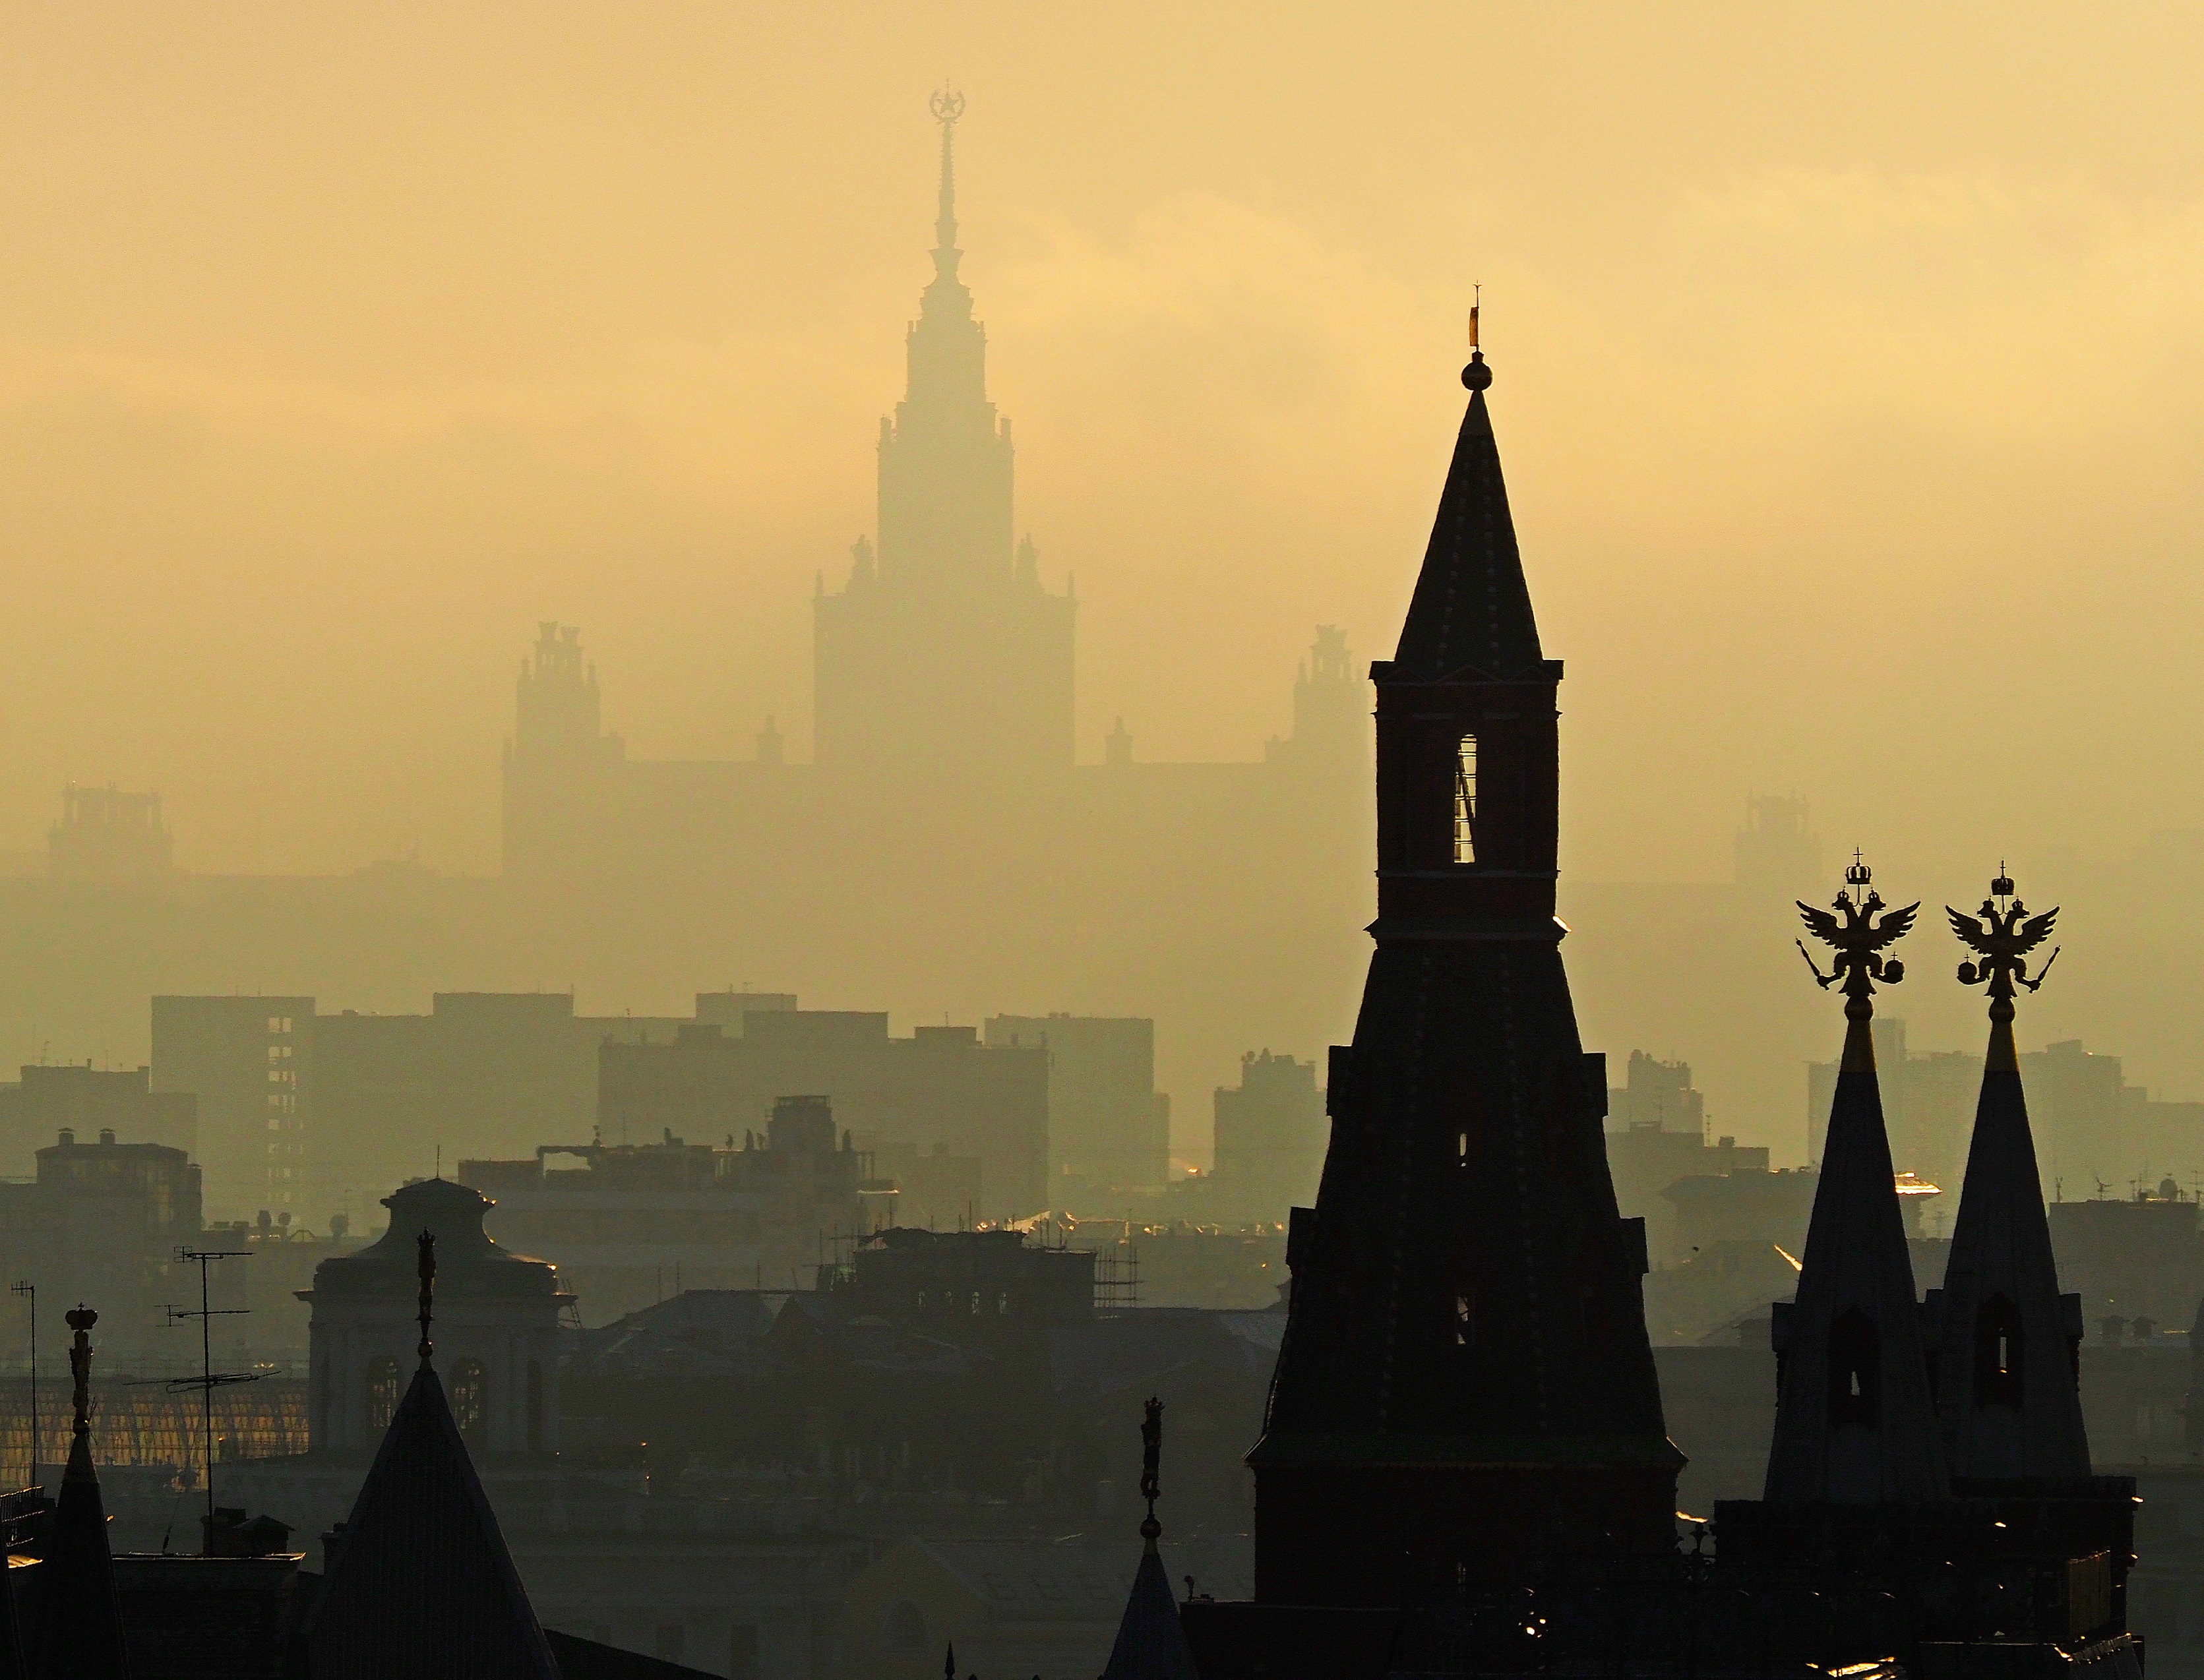 В столице прогнозируется туман. Фото: Антон Гердо